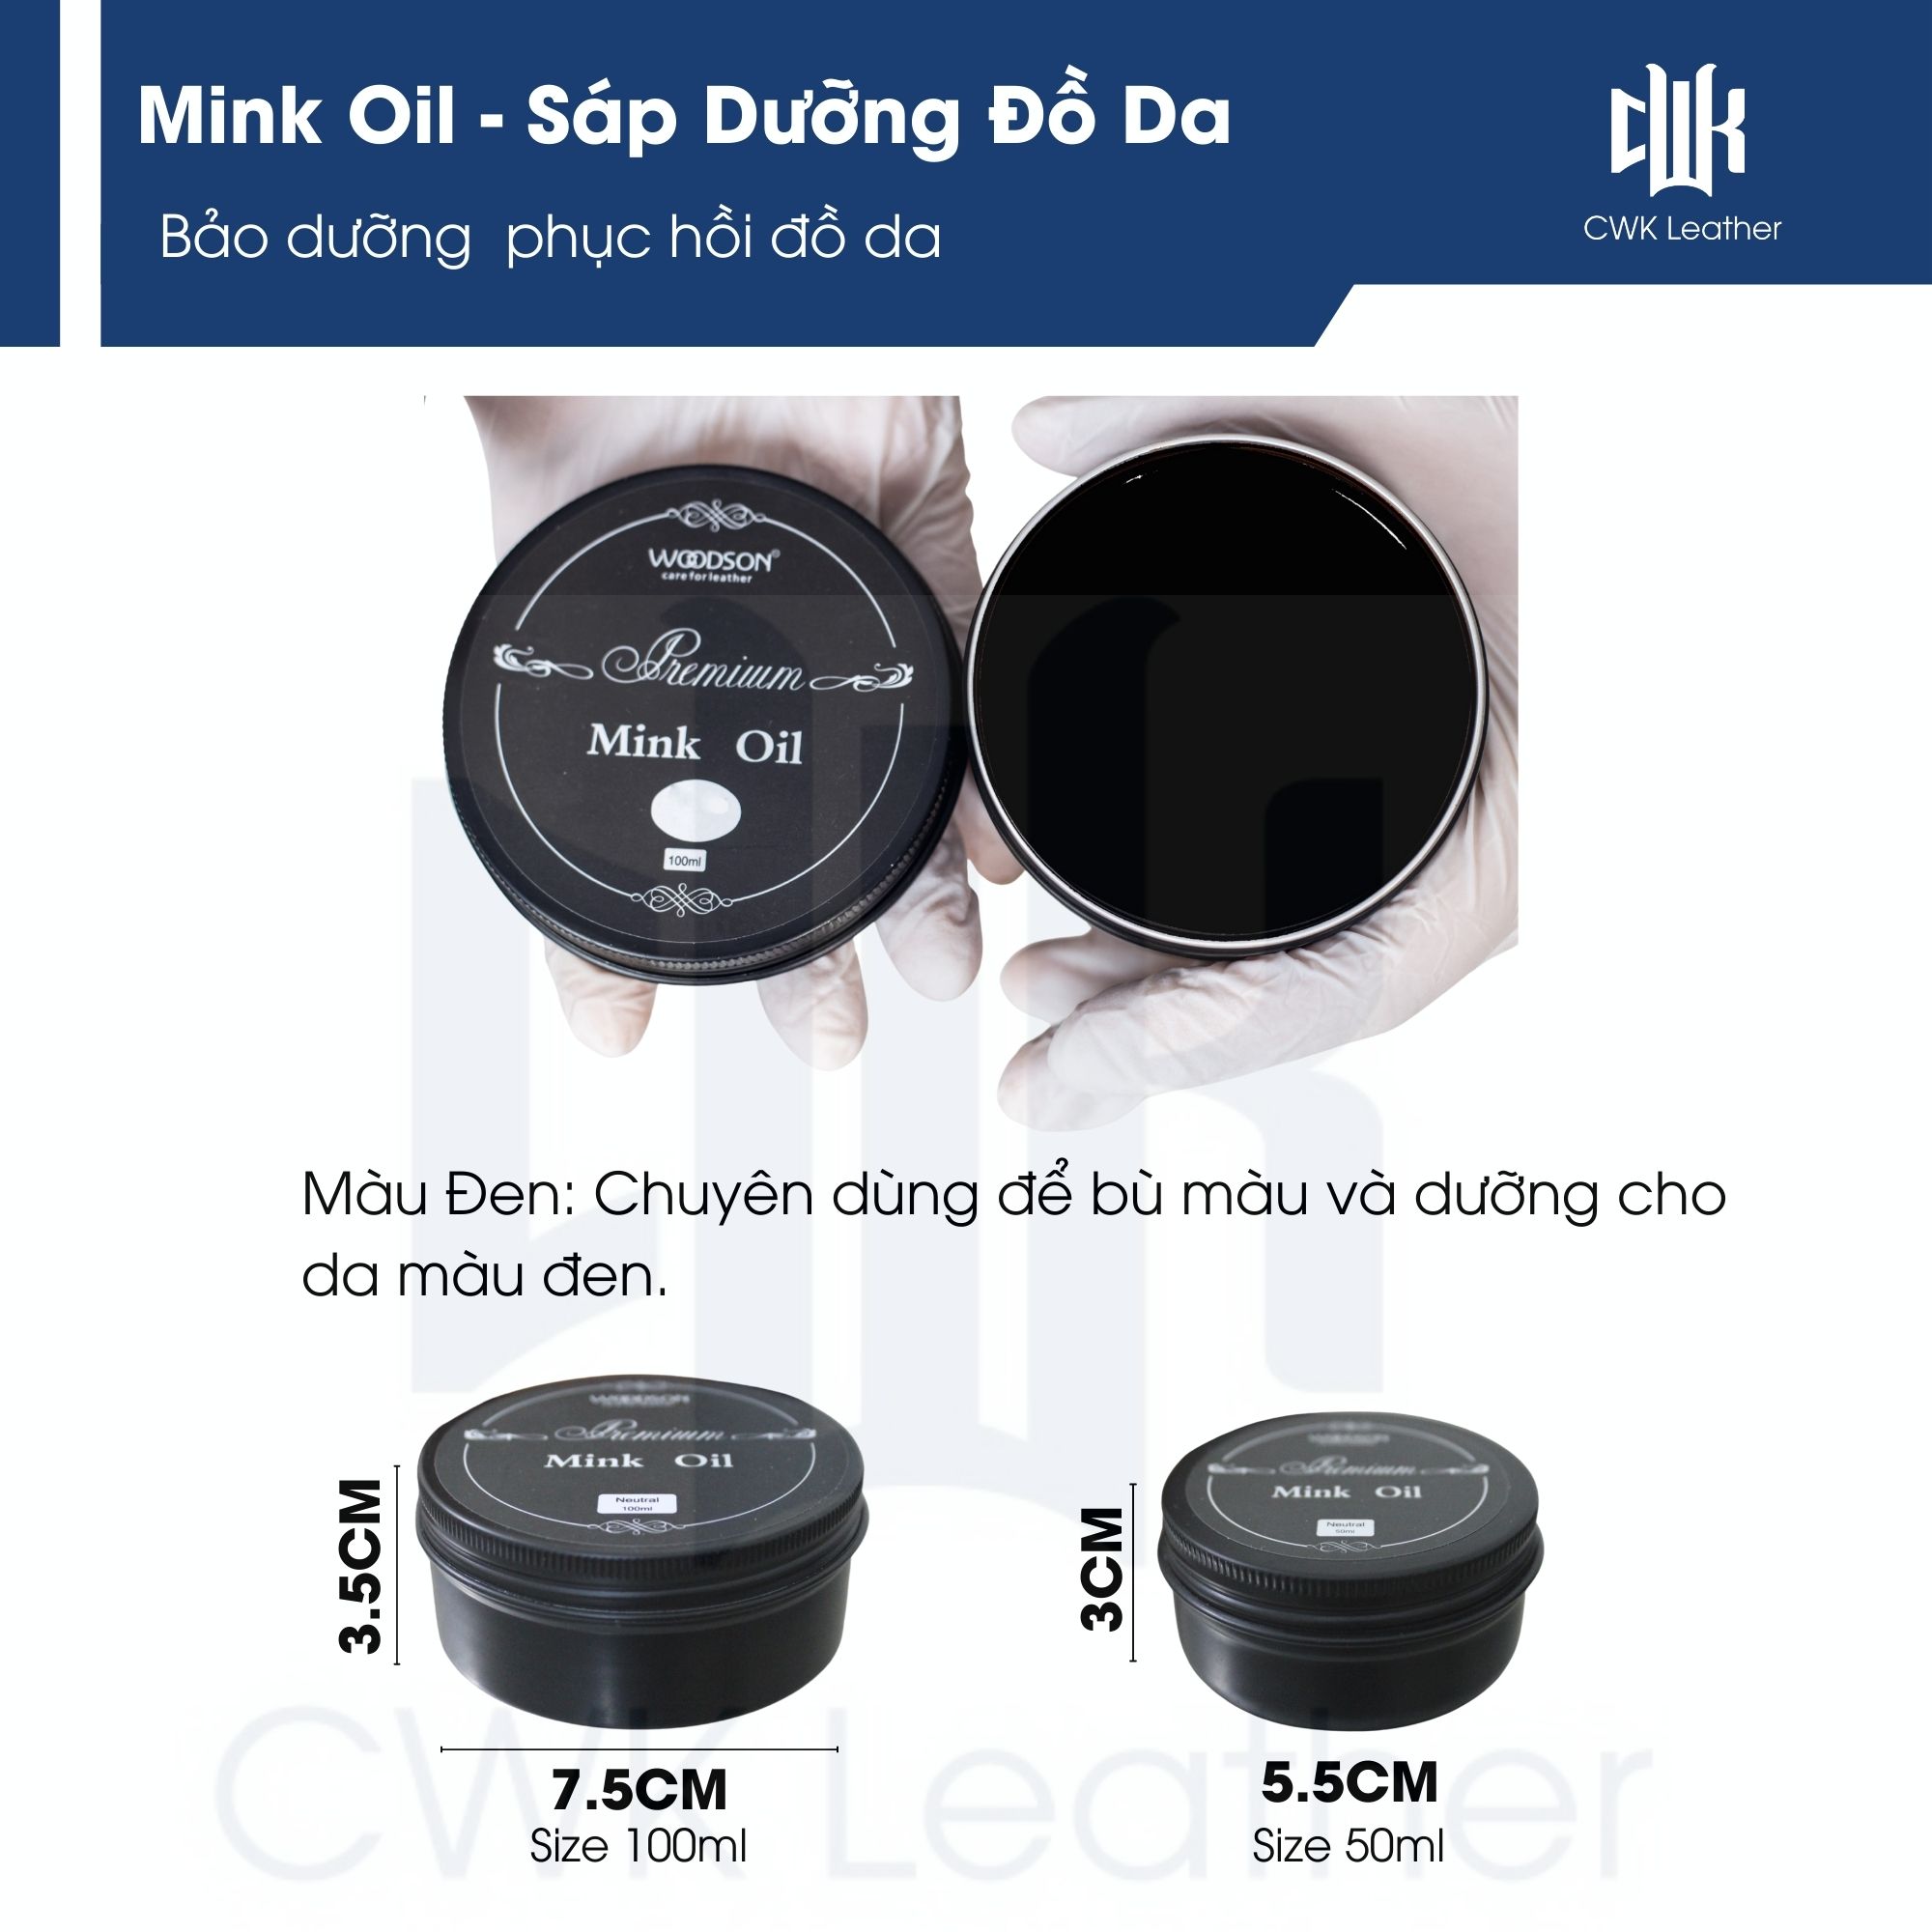 Mink oil đen